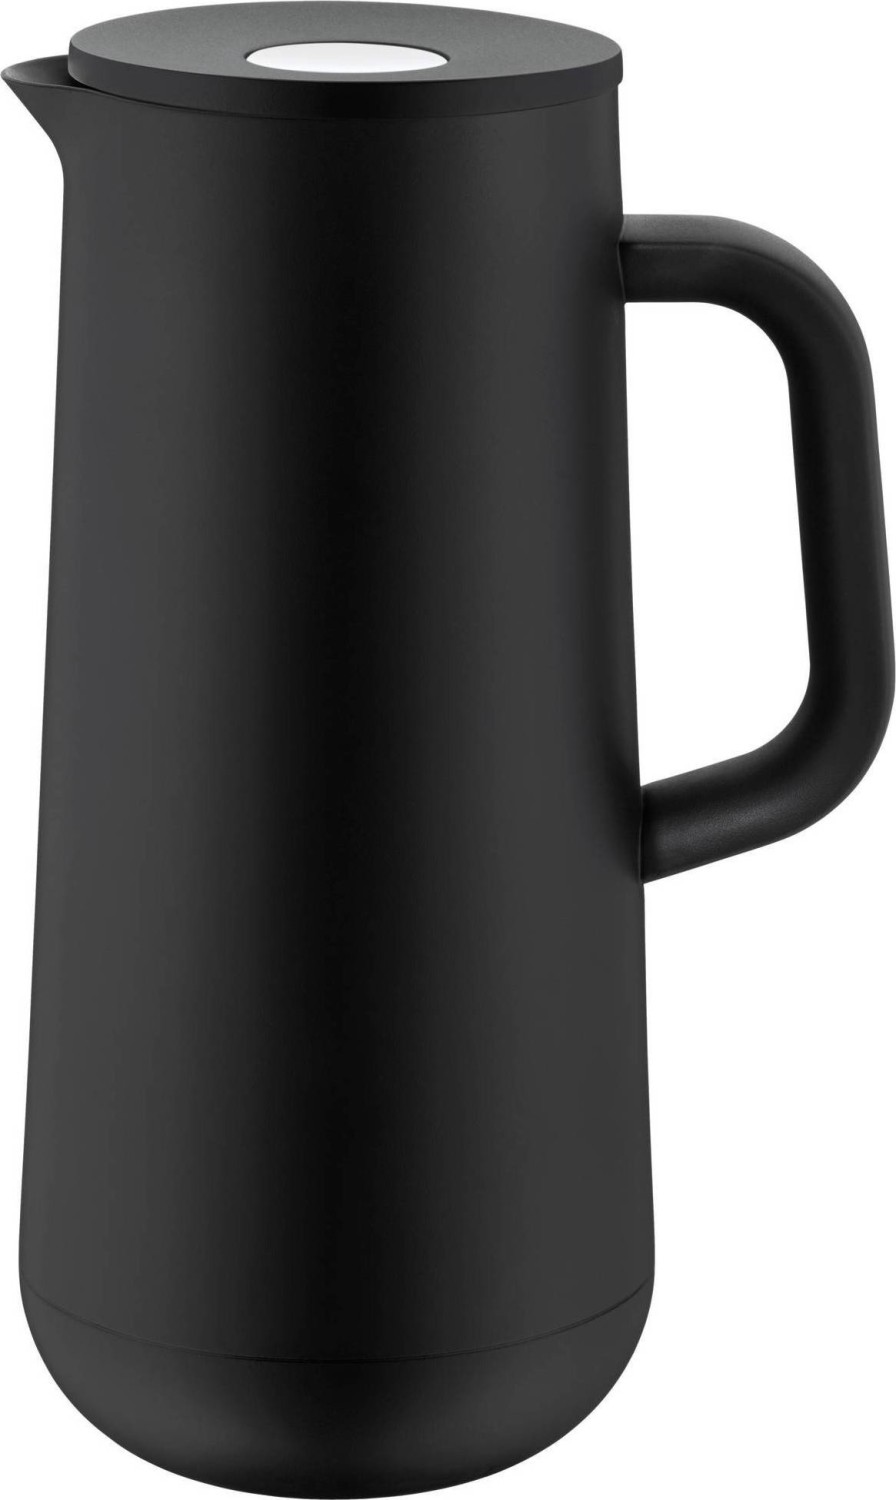 WMF Impulse Isolierkanne Kaffee Preisvergleich 1l (2024) schwarz | Deutschland € ab Geizhals 39,99